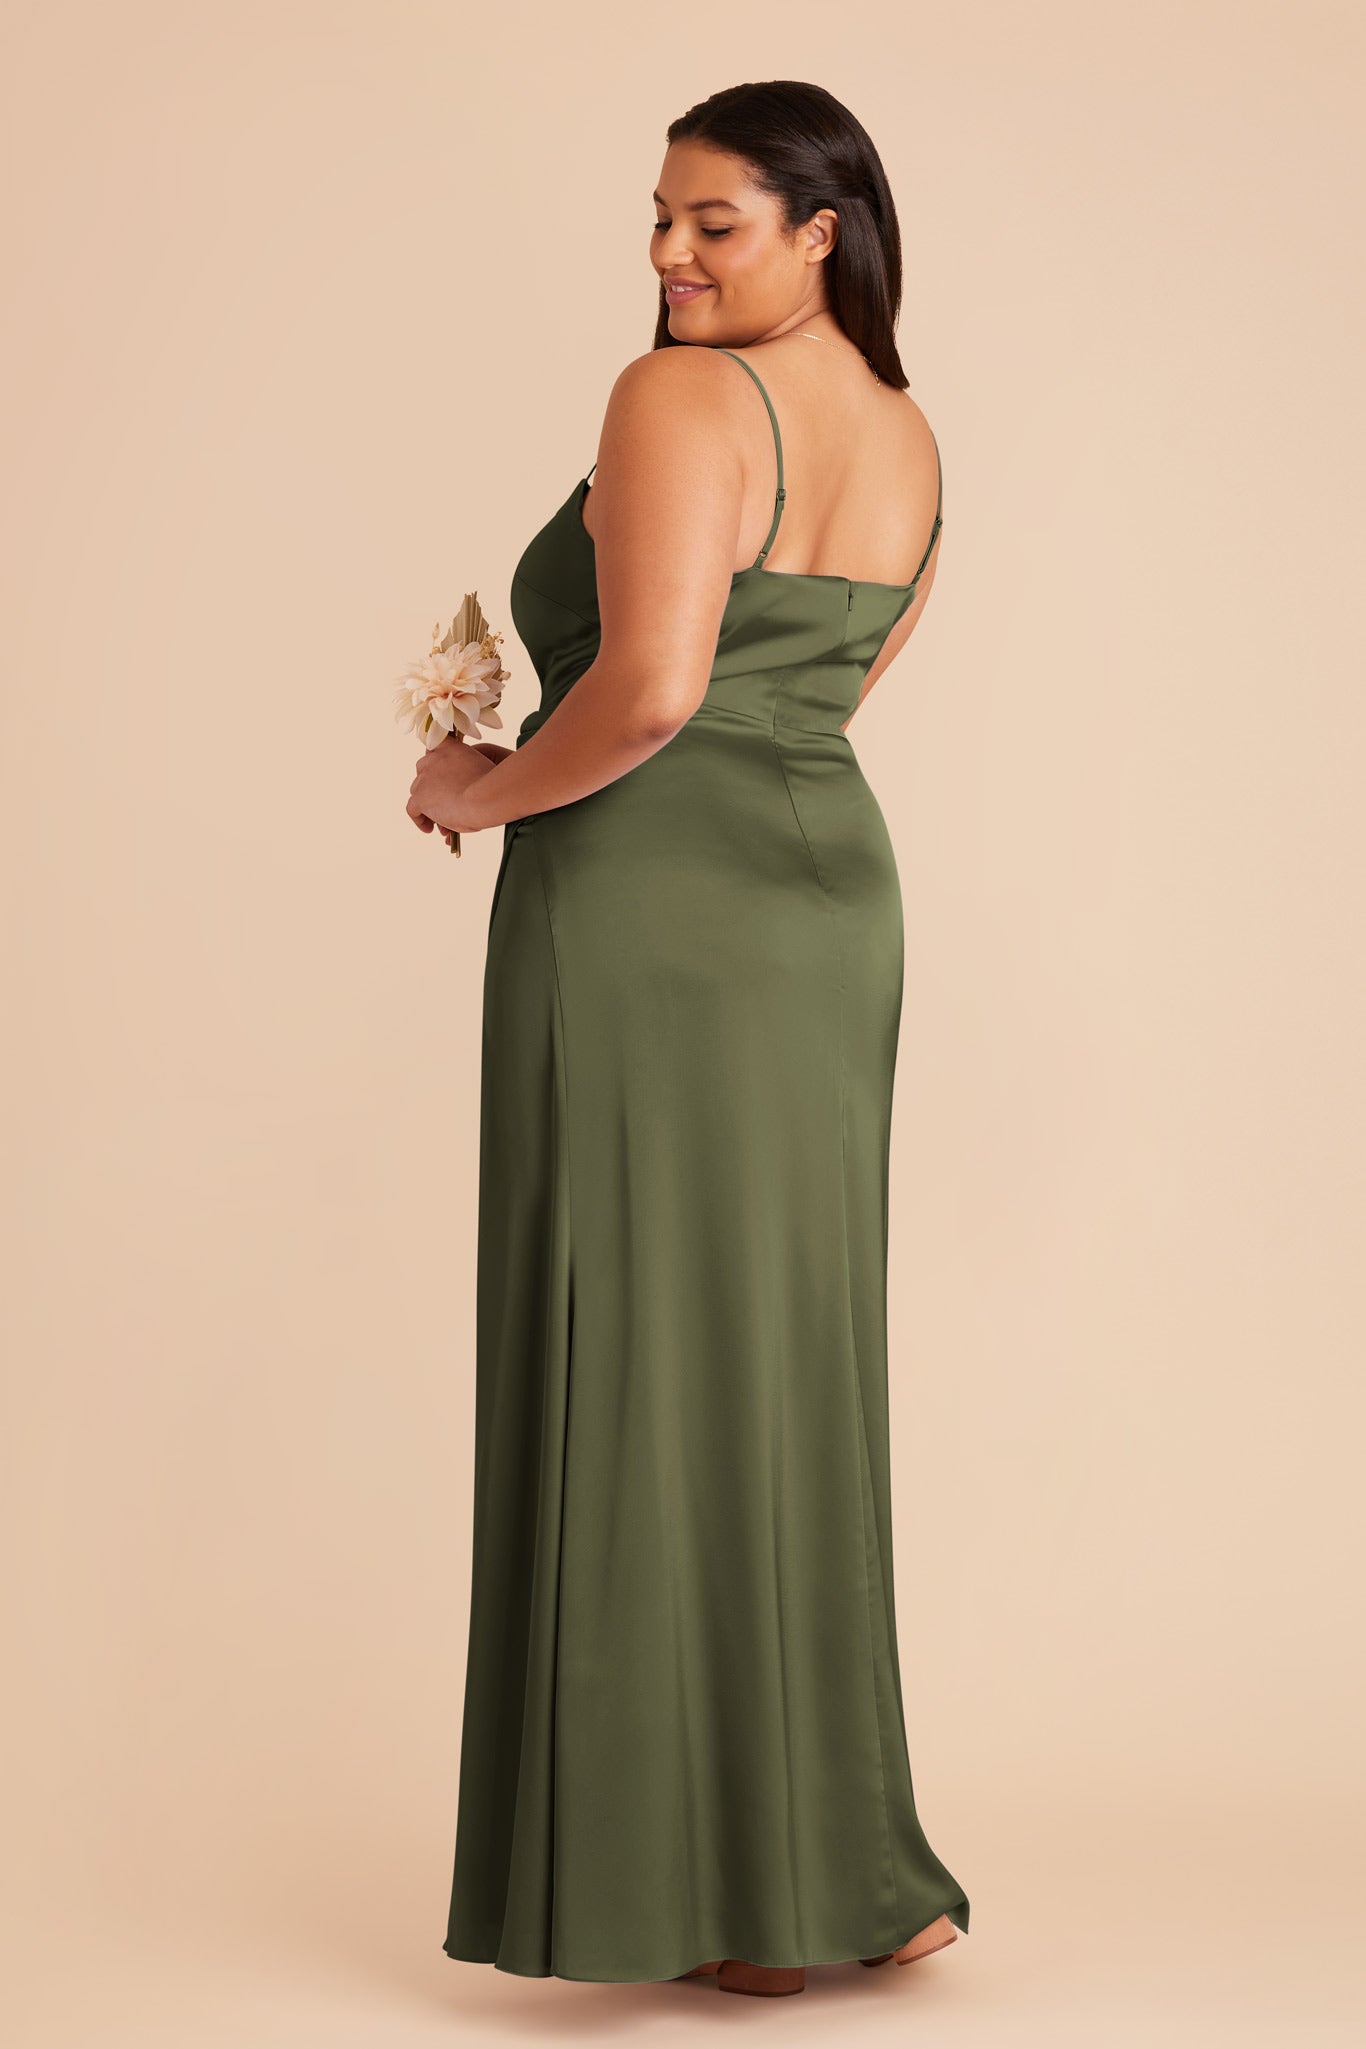 Olive Jennifer Matte Satin Dress by Birdy Grey